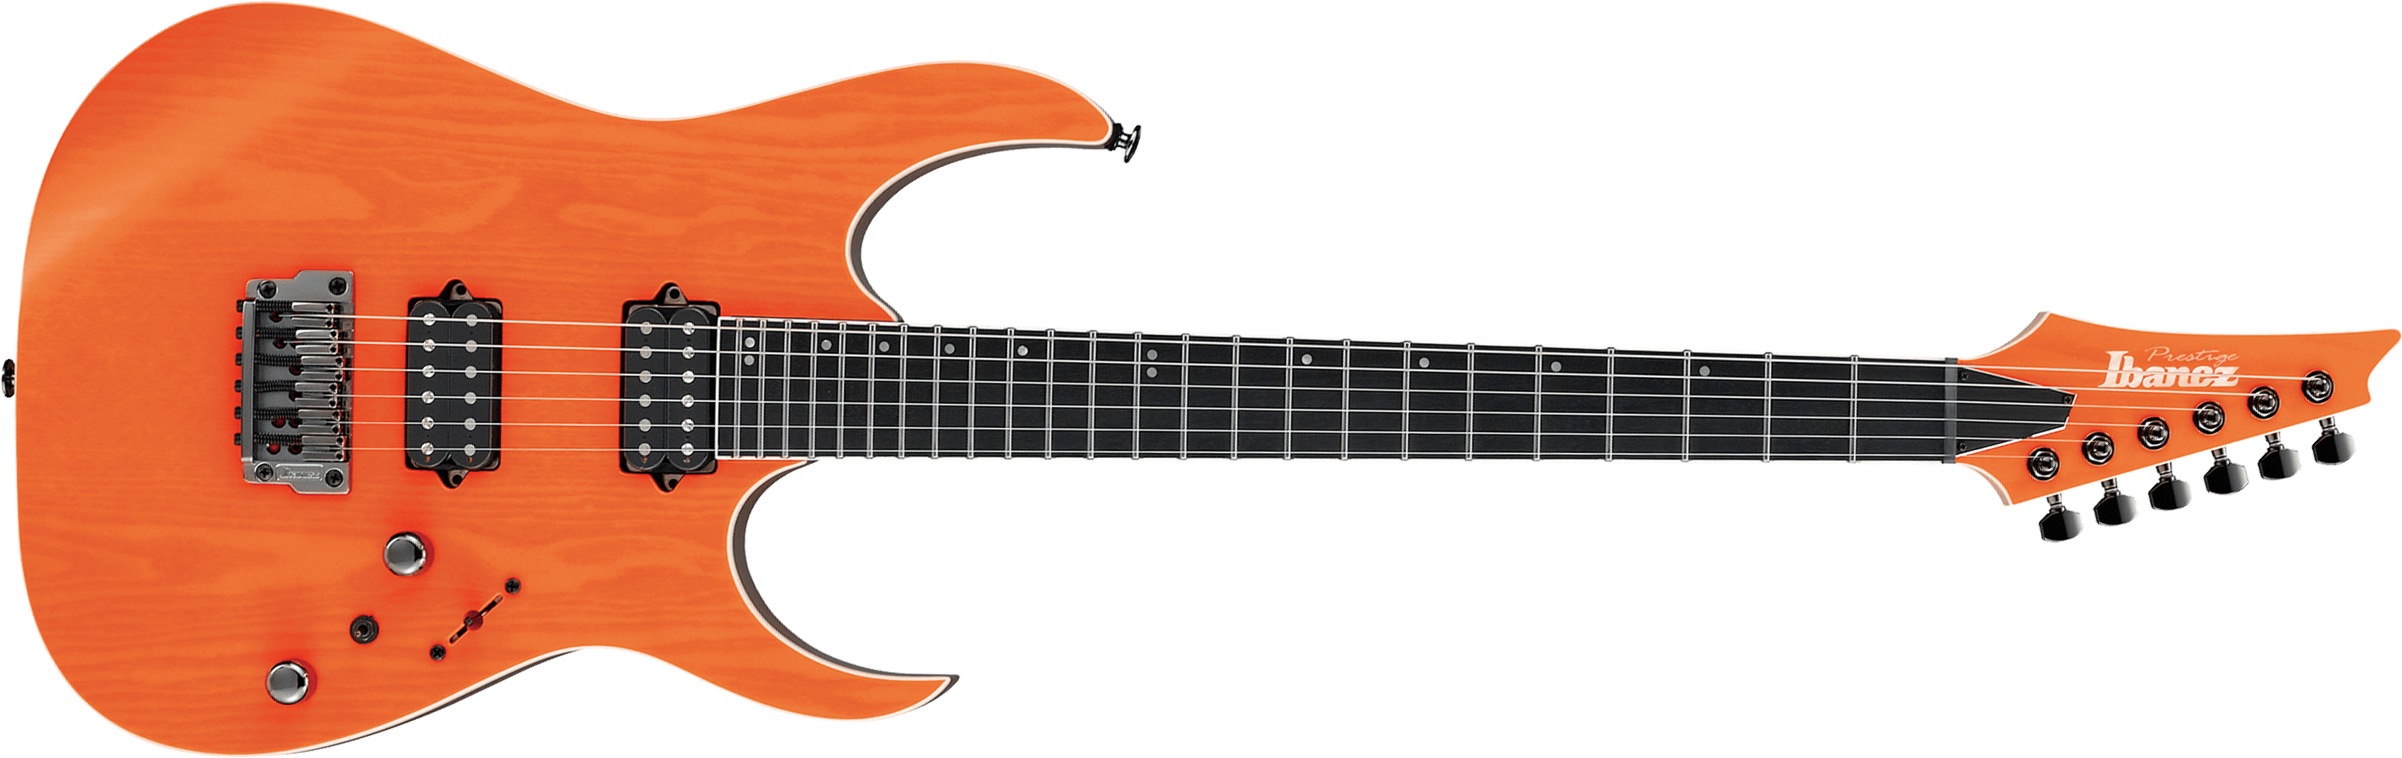 Ibanez Rgr5221 Tfr Prestige Jap Ht Bare Knuckle Hh Eb - Transparent Fluorescent Orange - Elektrische gitaar in Str-vorm - Main picture